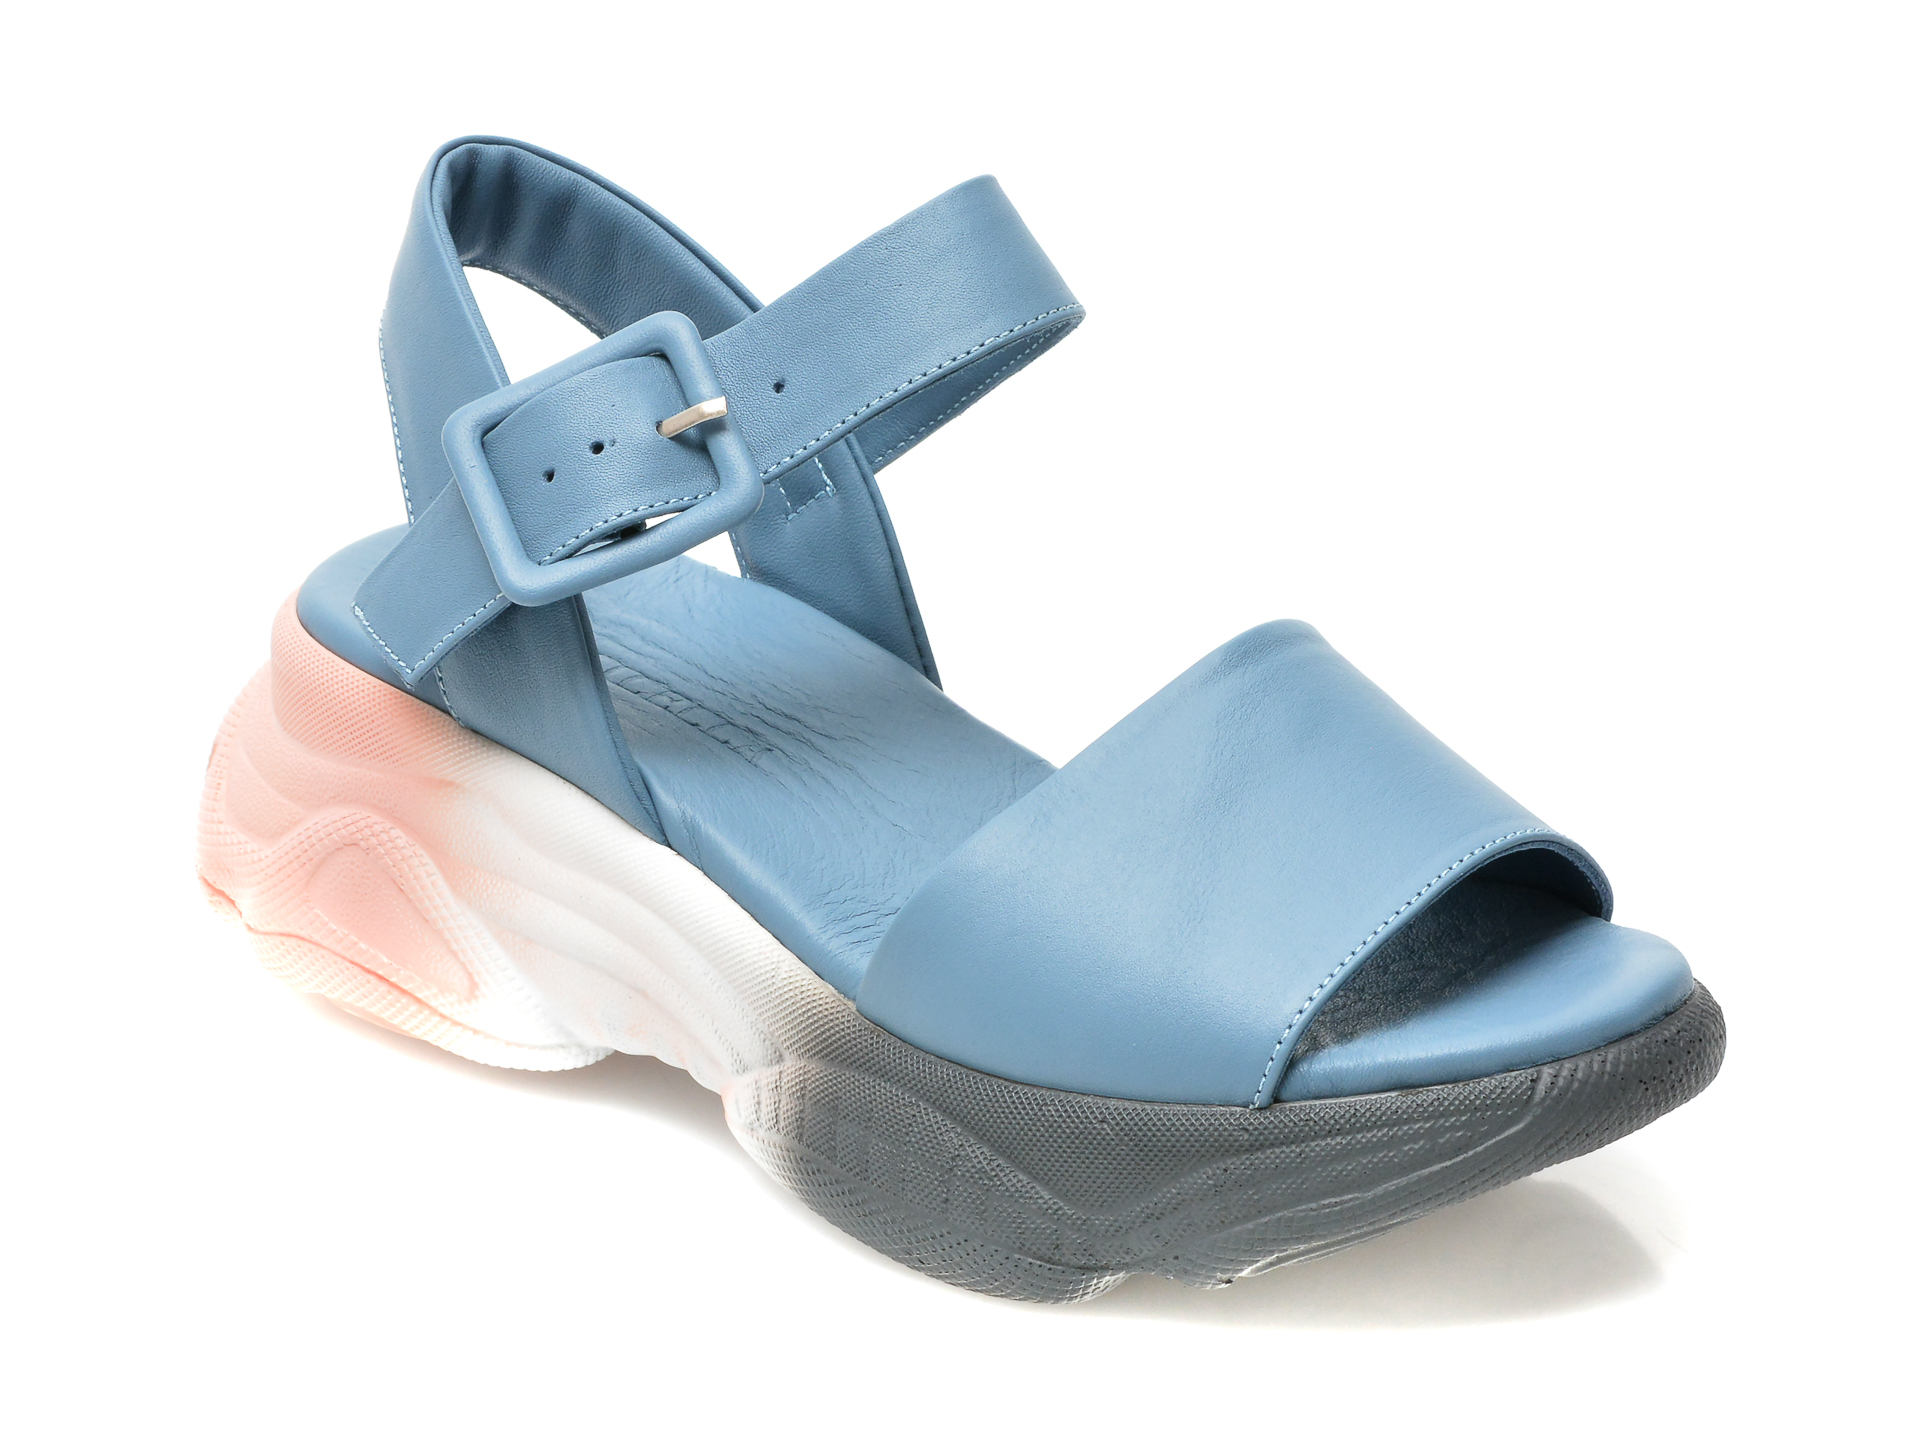 Sandale LOLILELLA albastre, 1581078, din piele naturala LOLILELLA